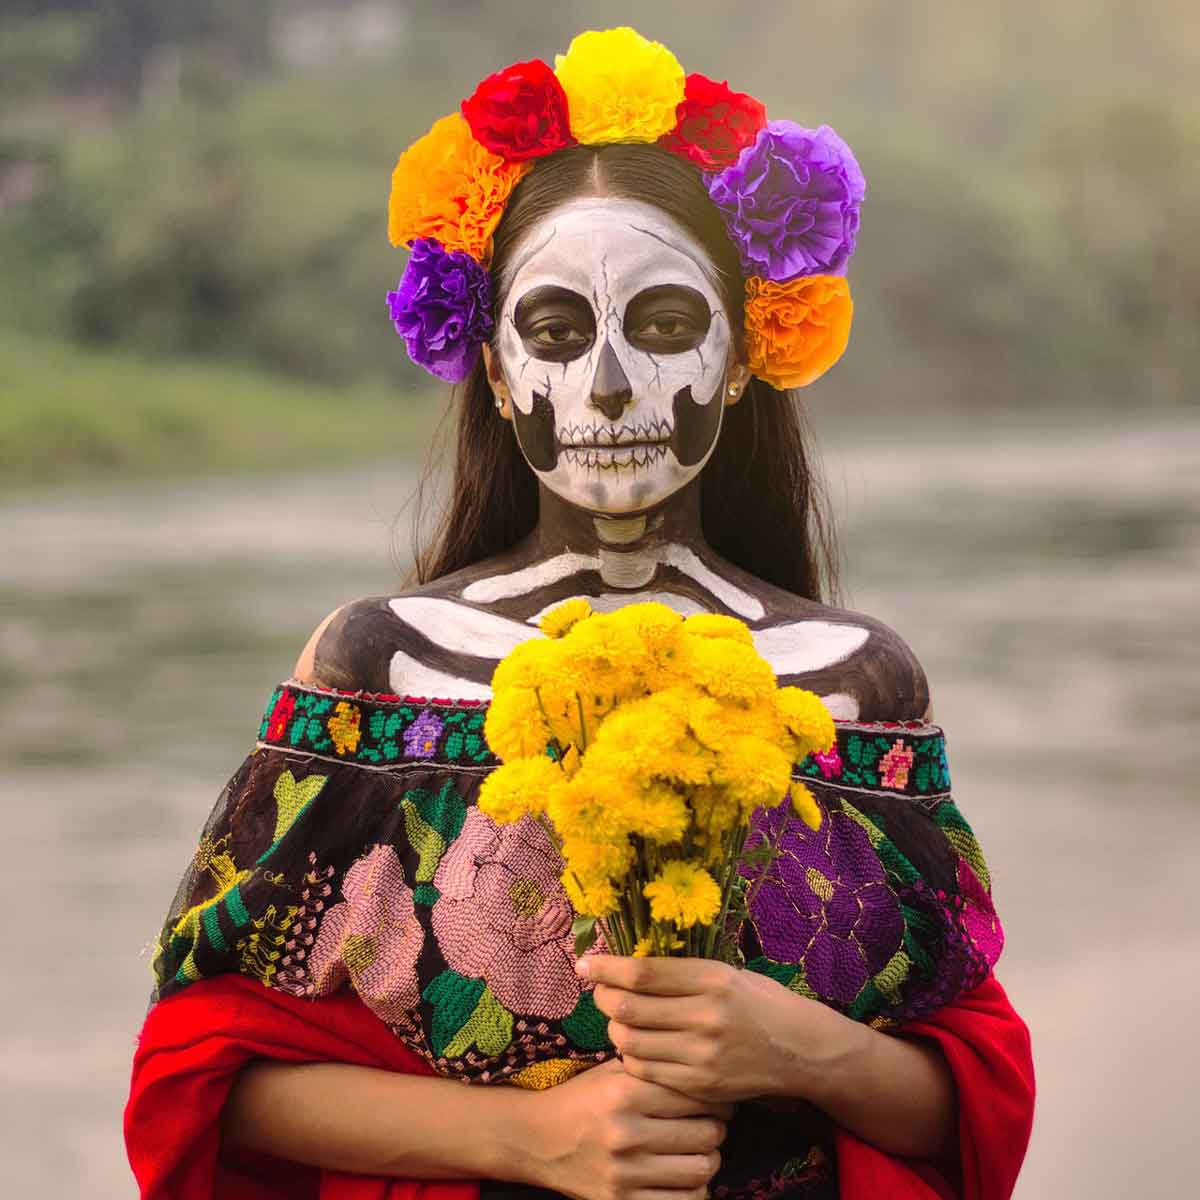 La calavera Catrina fue creada por José Guadalupe Posada y se ha convertido en uno de los símbolos más reconocibles e importantes de la cultura de México.